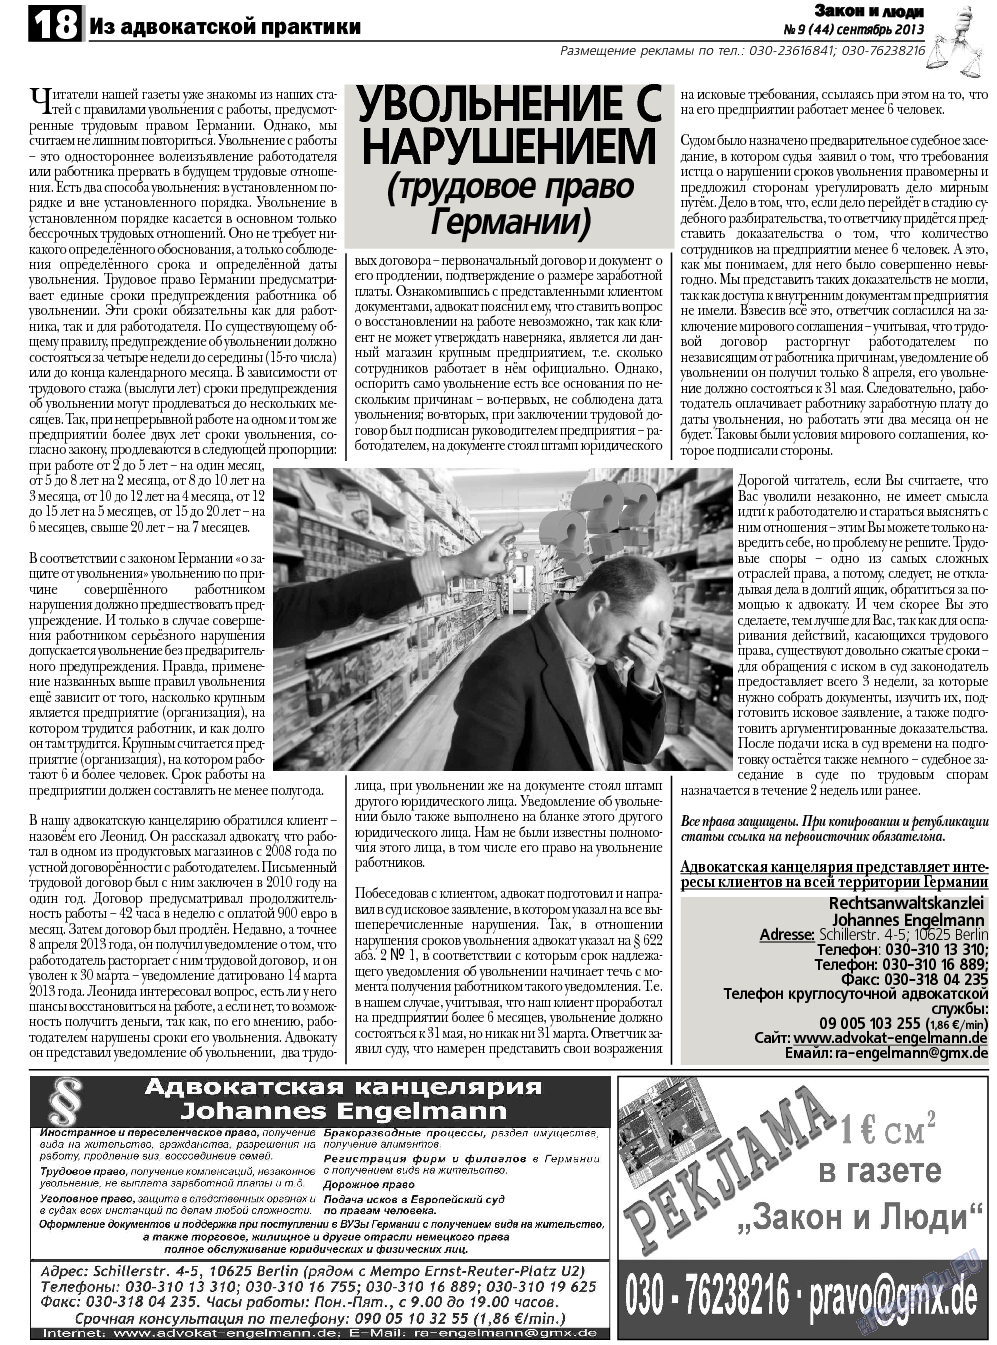 Закон и люди, газета. 2013 №9 стр.18